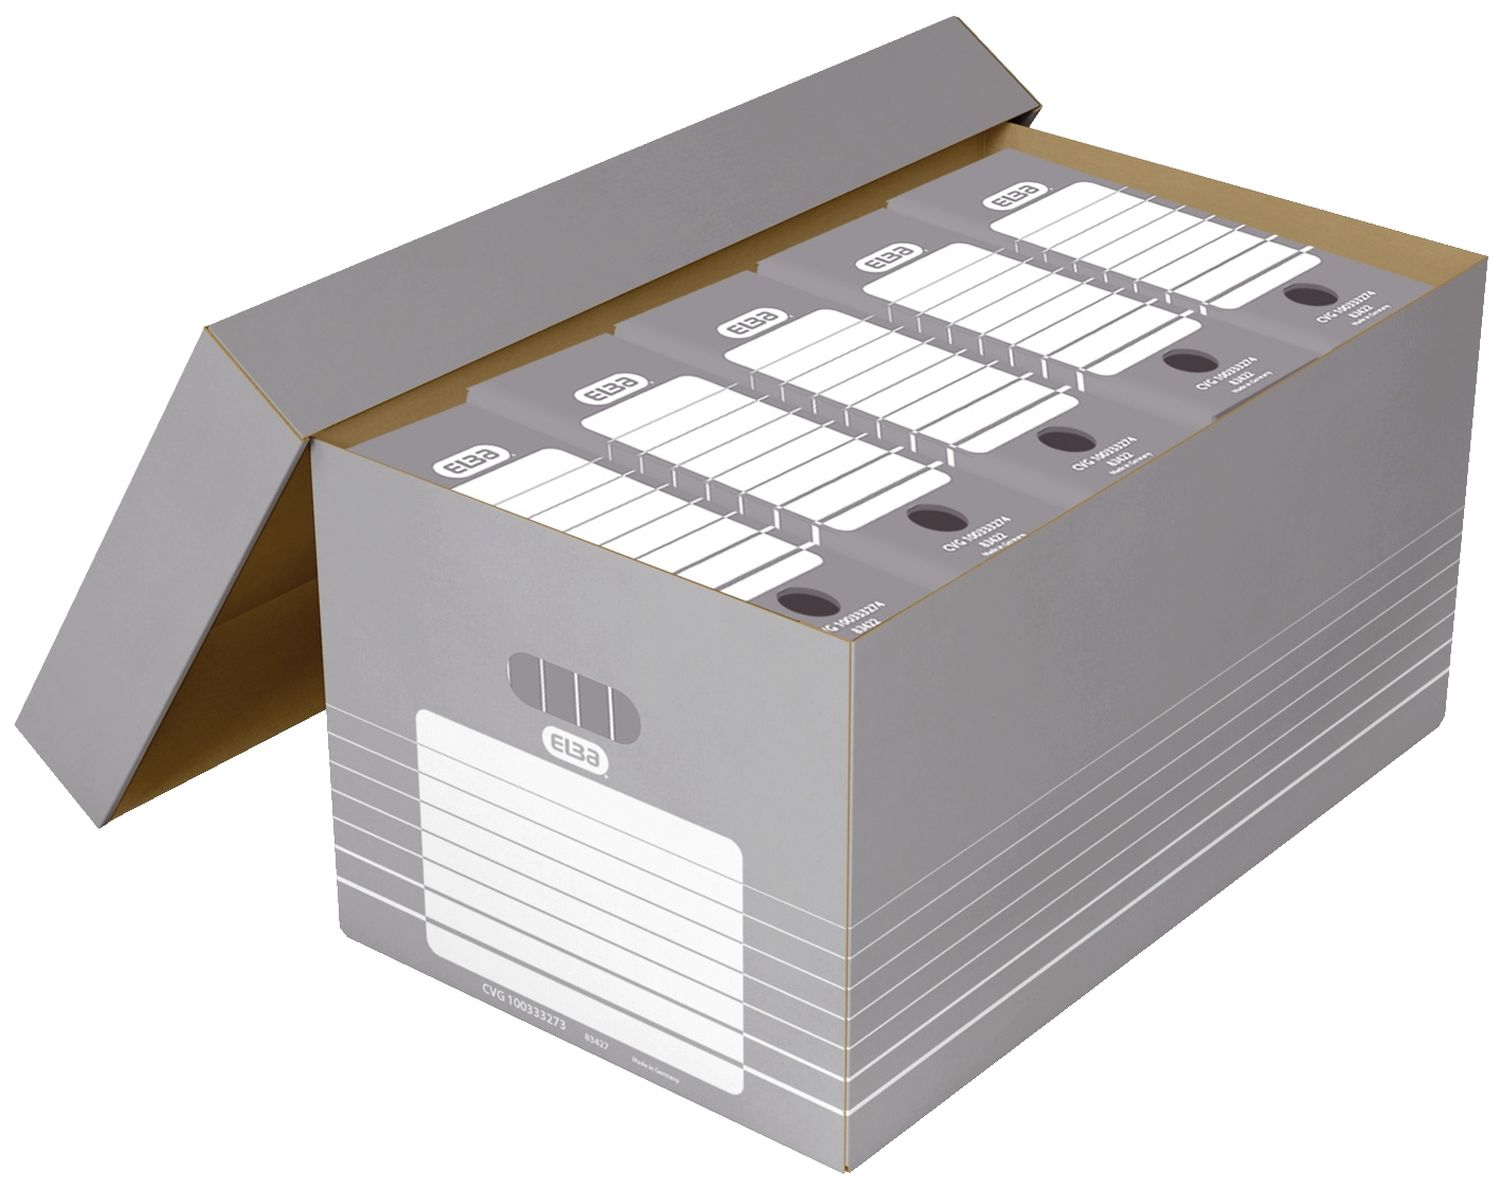 Archivcontainer tric maxi 83427 / 100333273 mit Deckel für Hängeregistratur und Ordner, Wellpappe, grau/weiß